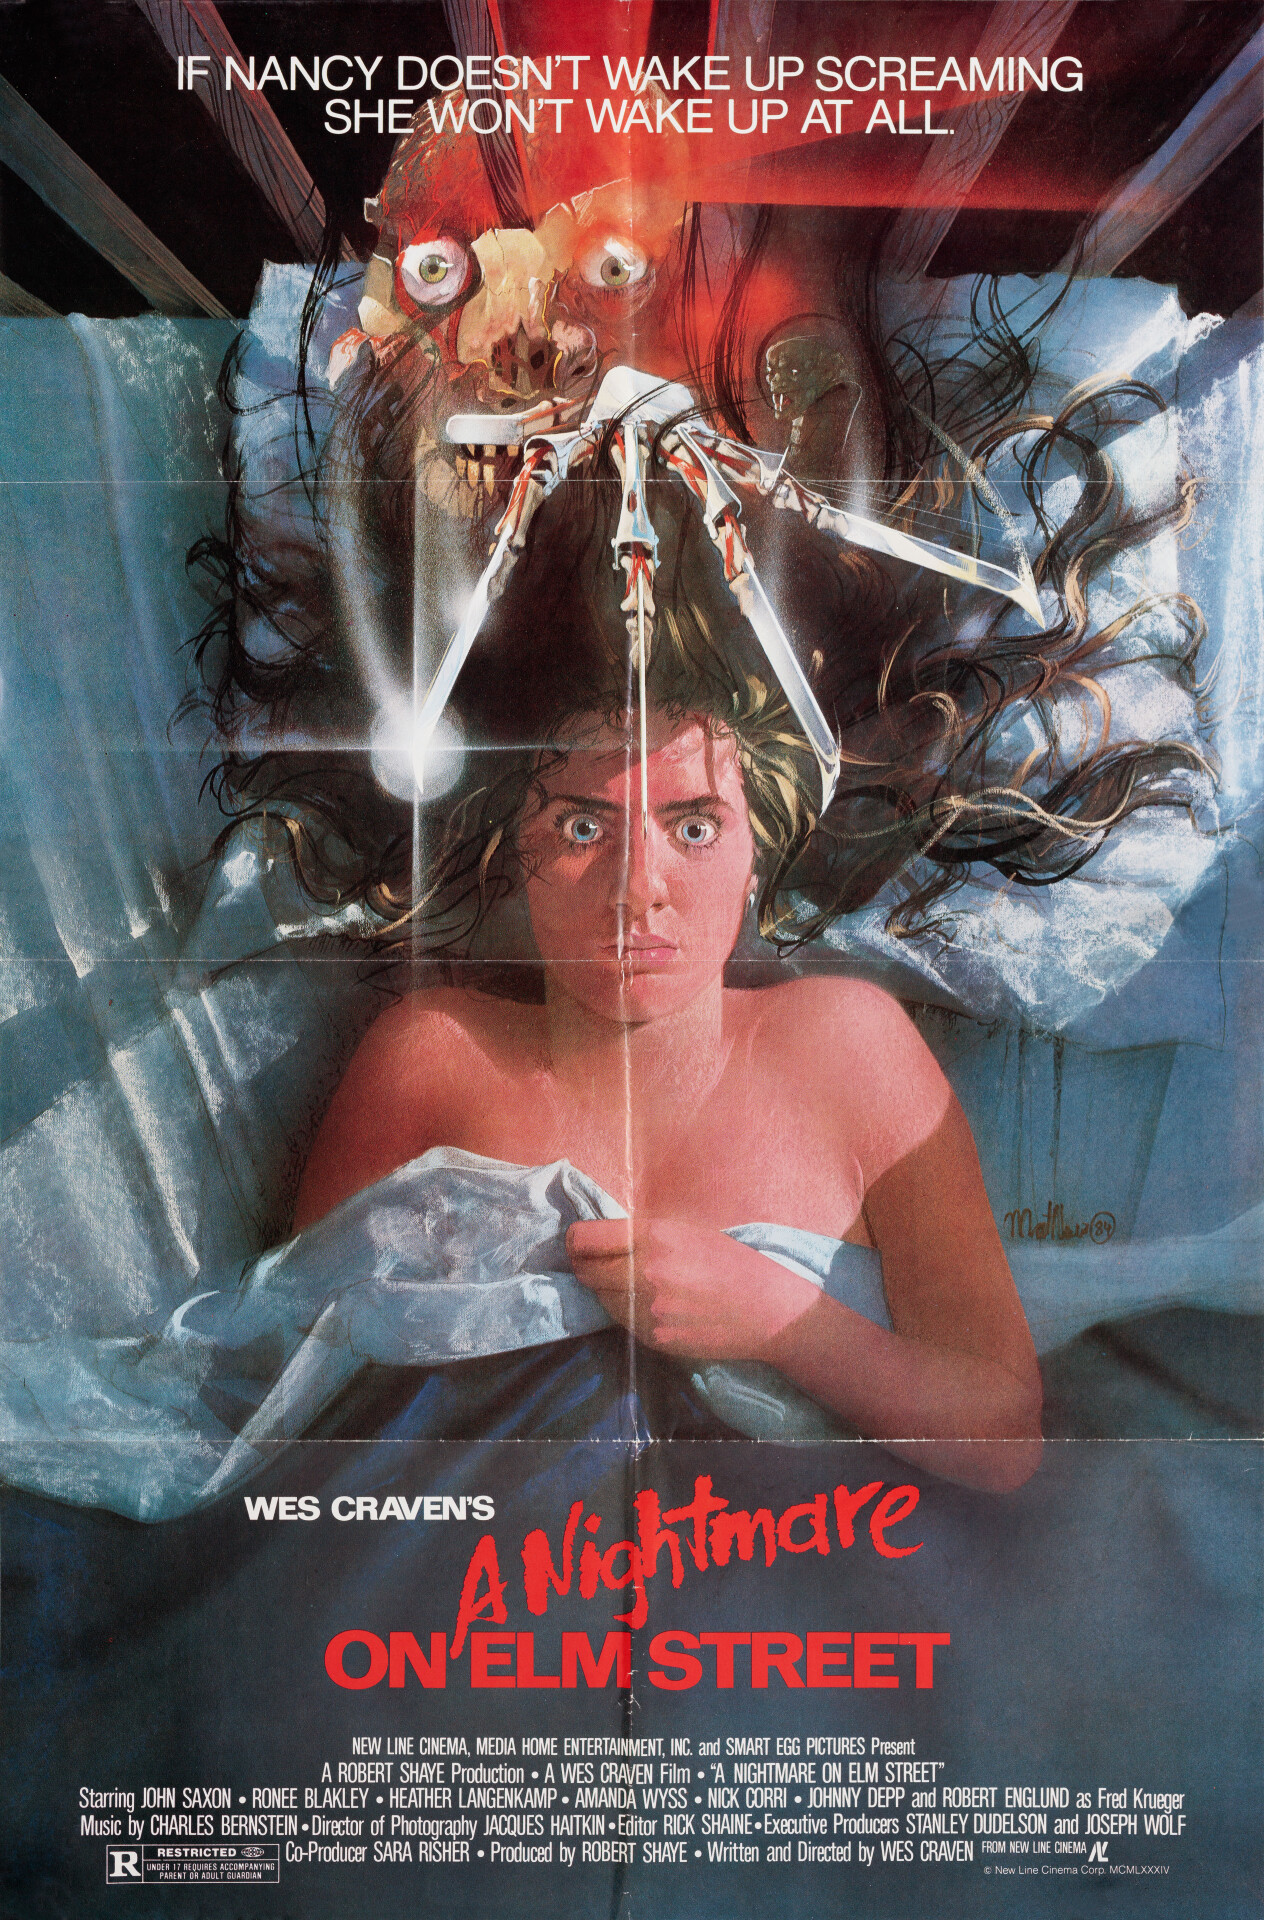 Кошмар на улице Вязов (A Nightmare on Elm Street, 1984), режиссёр Уэс Крэйвен, американский постер к фильму, автор Мэтью Пик (ужасы, 1984 год)